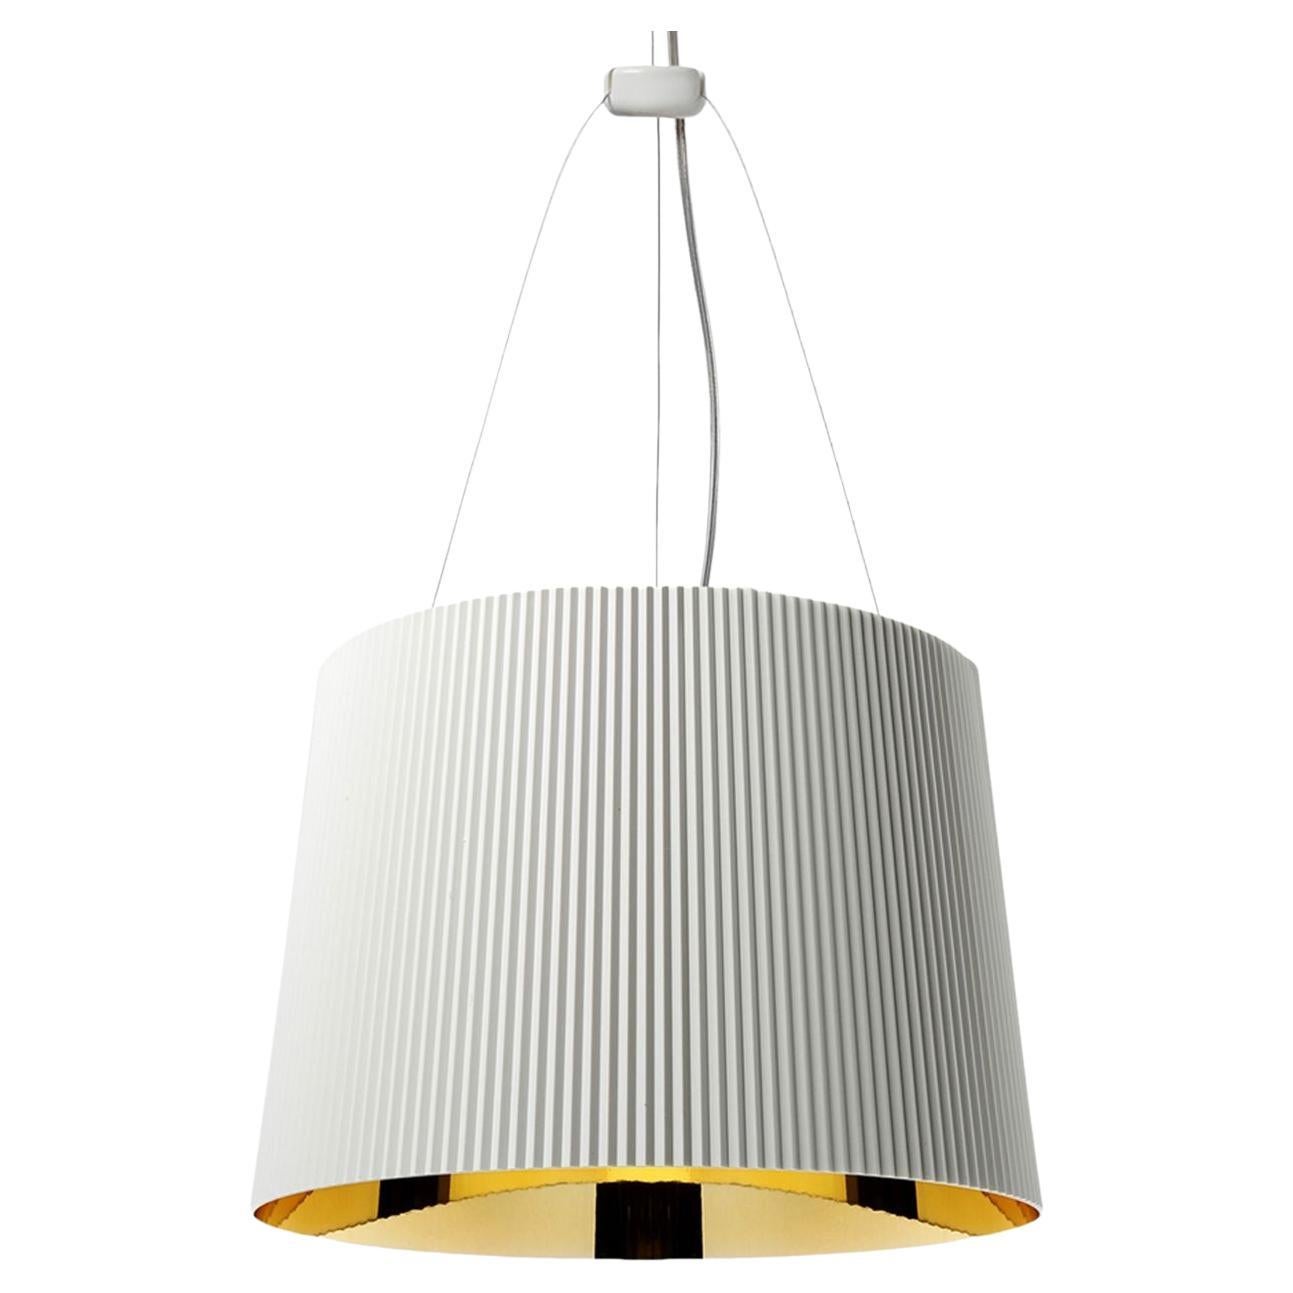 Ge' Suspension Lamp in White Golden by Ferruccio Laviani